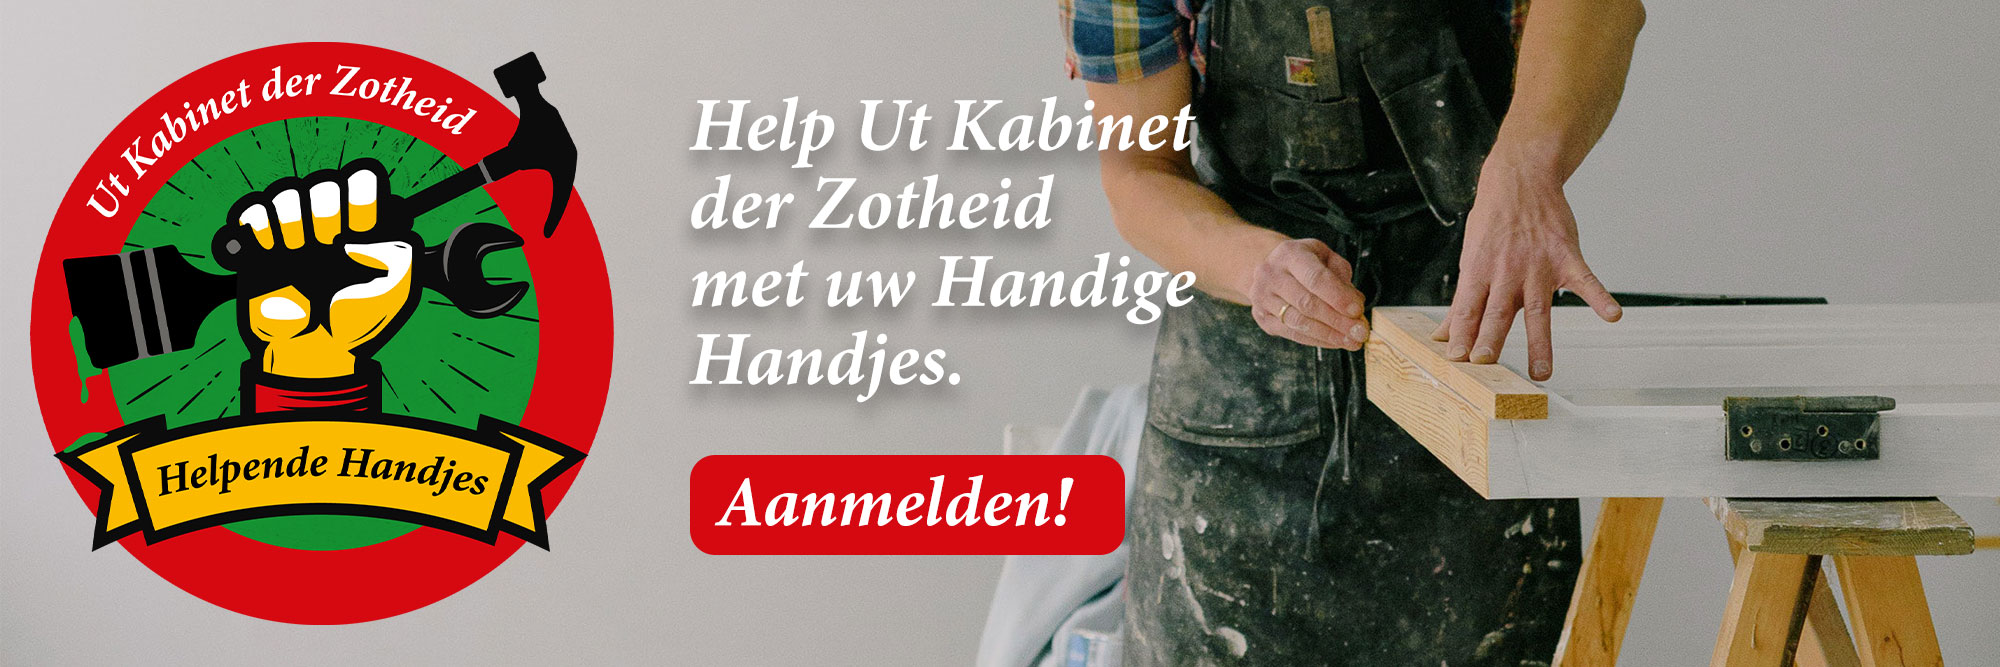 UtKabinetderZotheid_HelpendeHandjes_banner